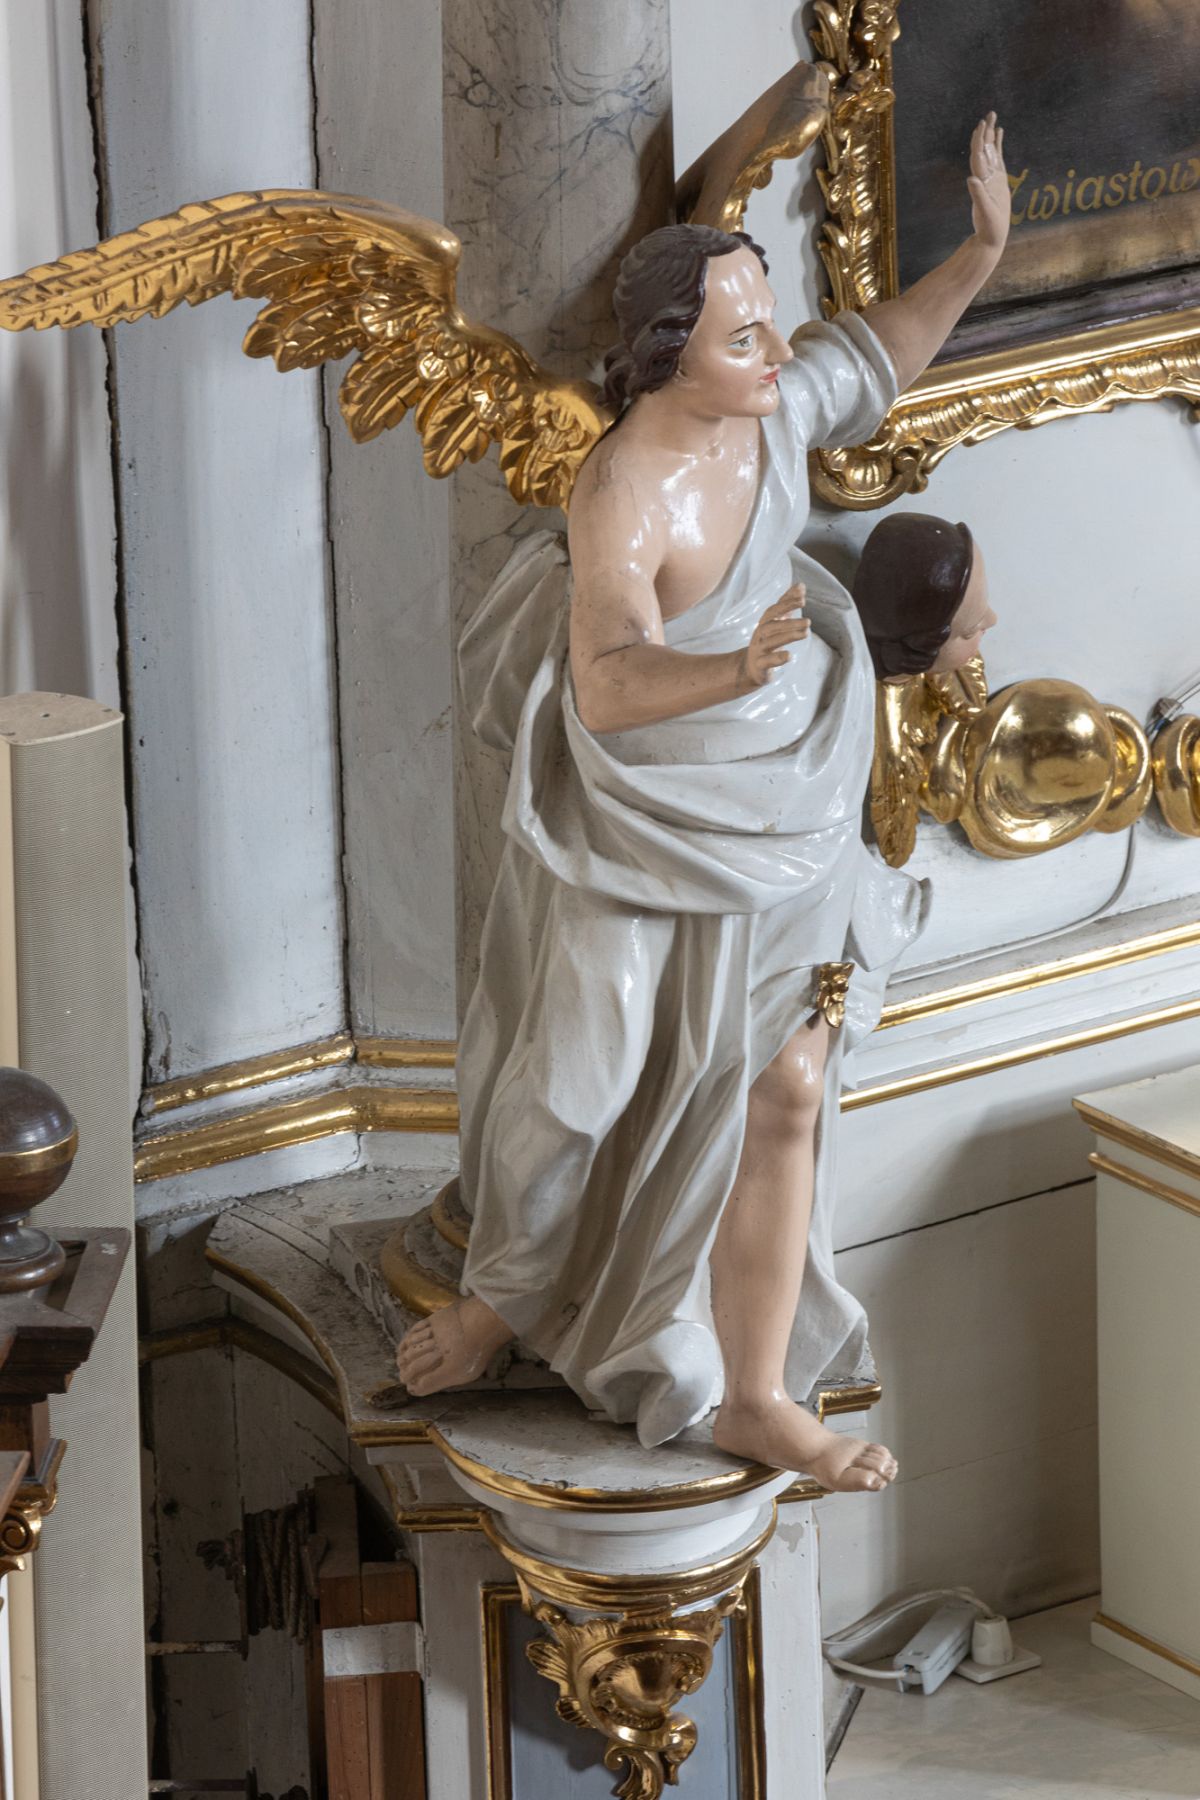 Rzeźby – Anioły – z ołtarza bocznego Matki Boskiej z Dzieciątkiem